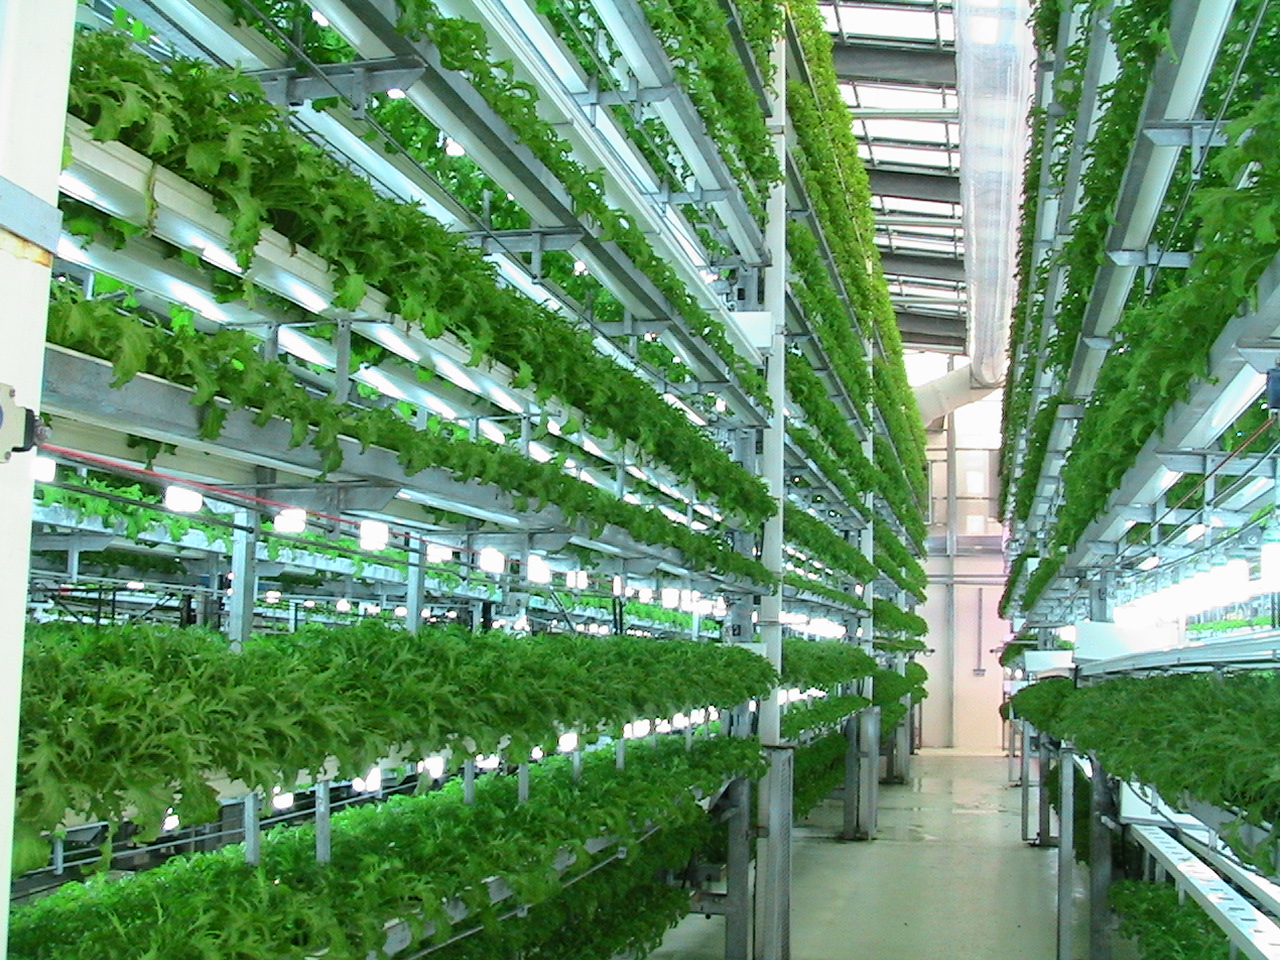 sistem for aquaponic: Aquaponics vegetables hydroponics ...